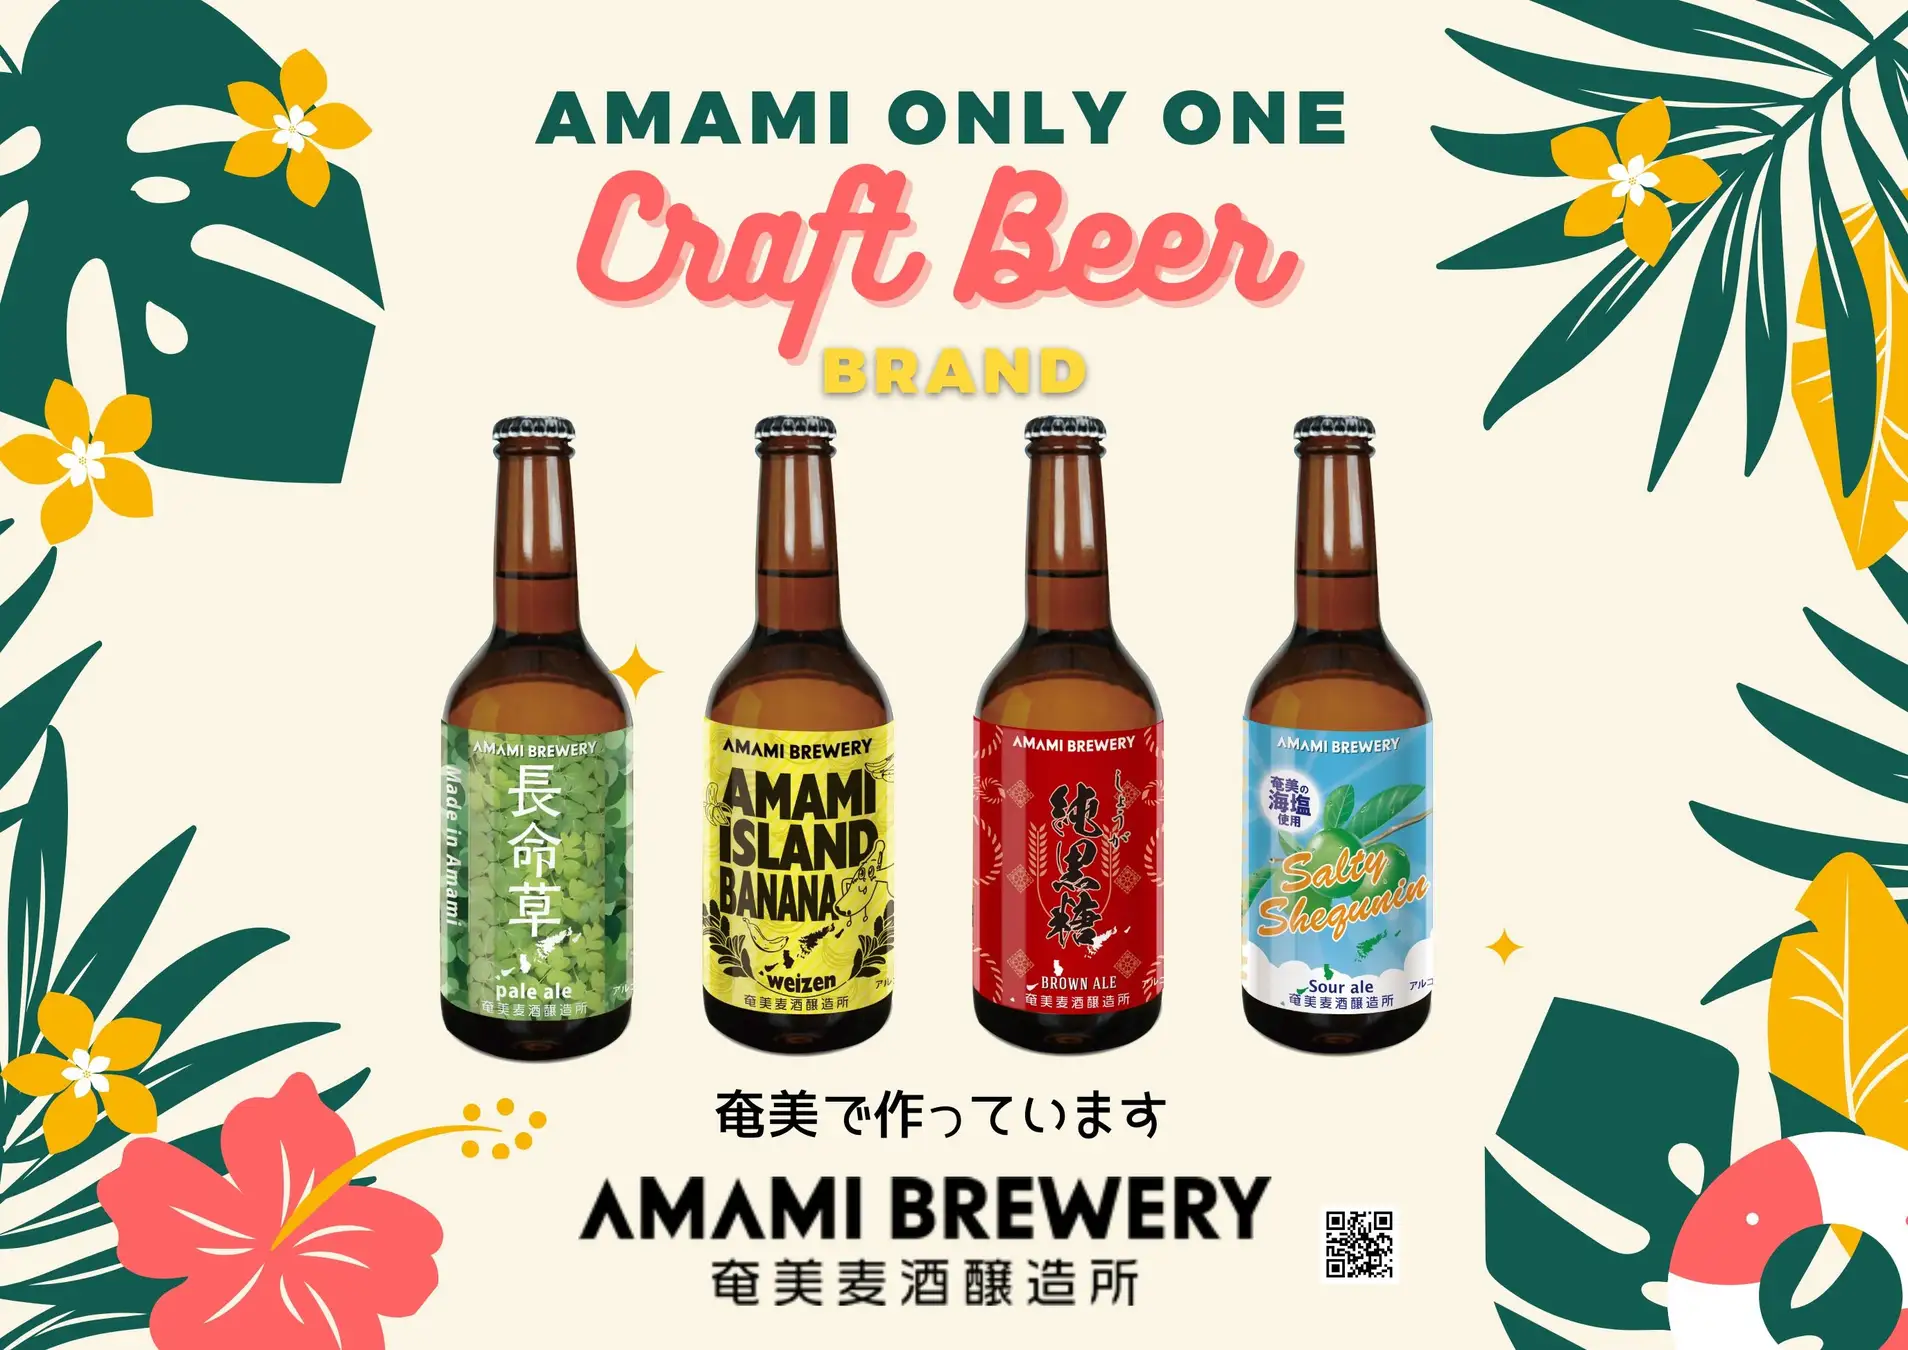 鹿児島県奄美大島の「奄美ブリュワリー」が、毒蛇『ハブ』を原料に使用したクラフトビールの醸造を開始。